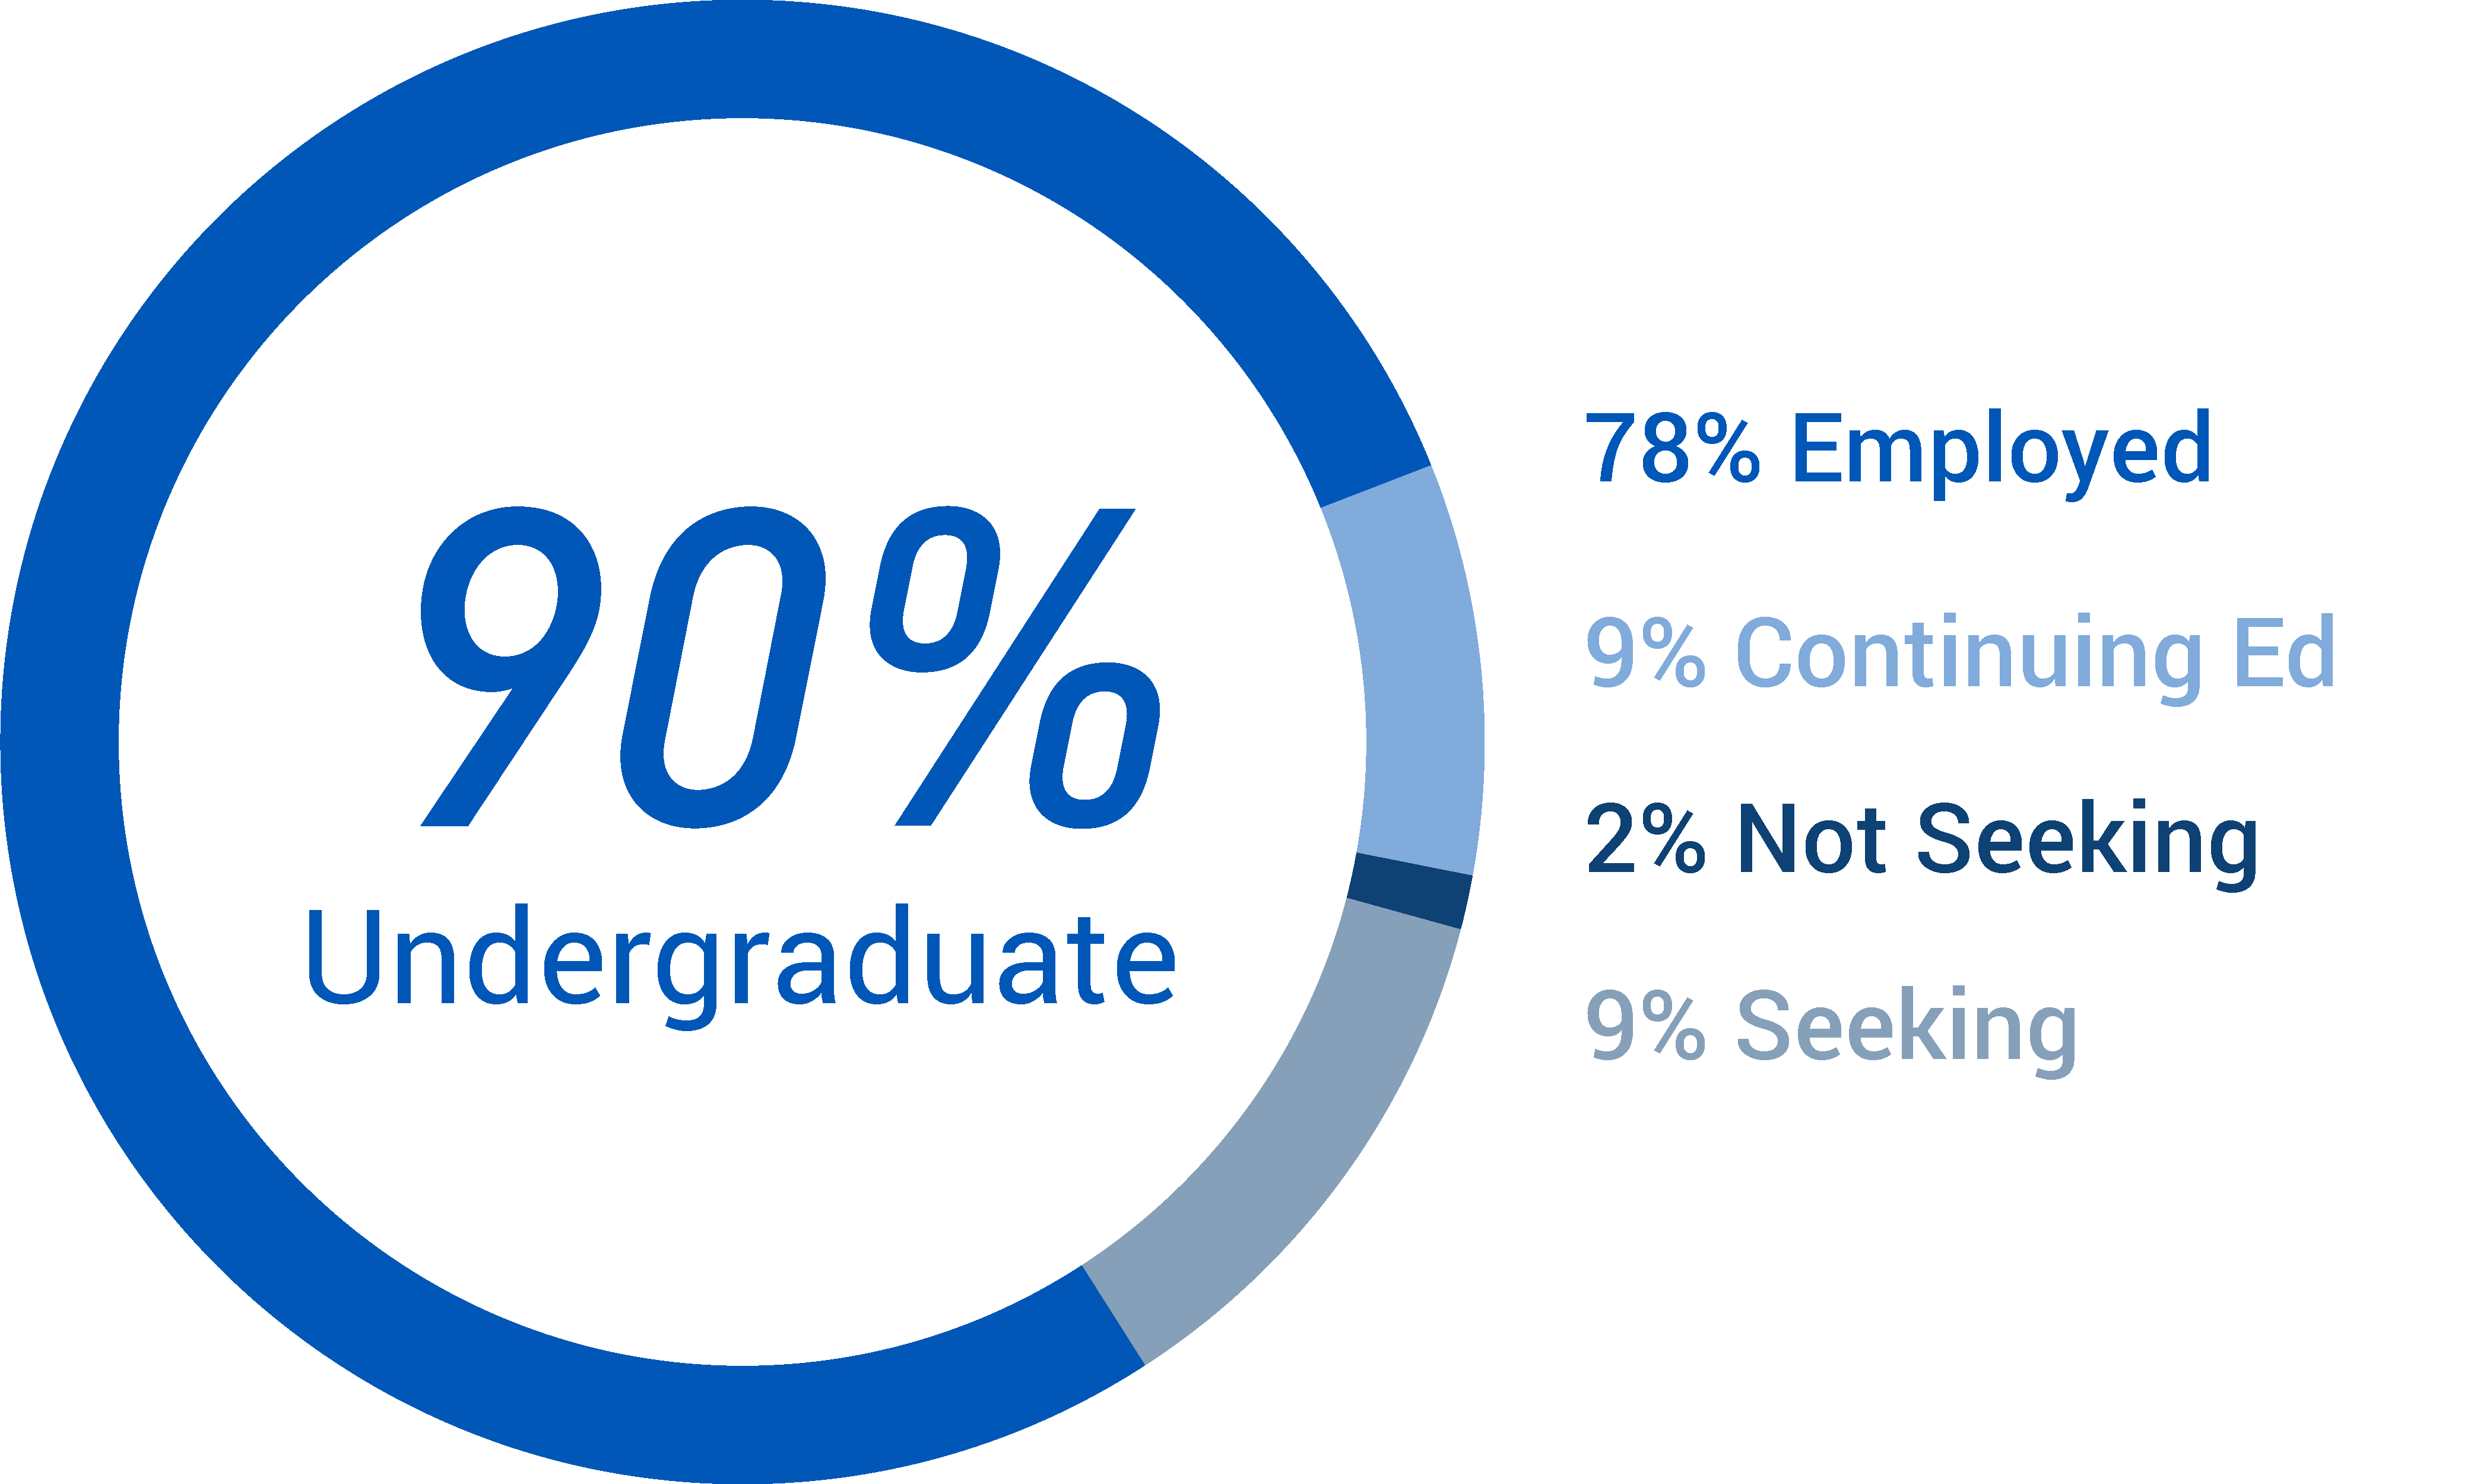 90% of undergraduate students employed